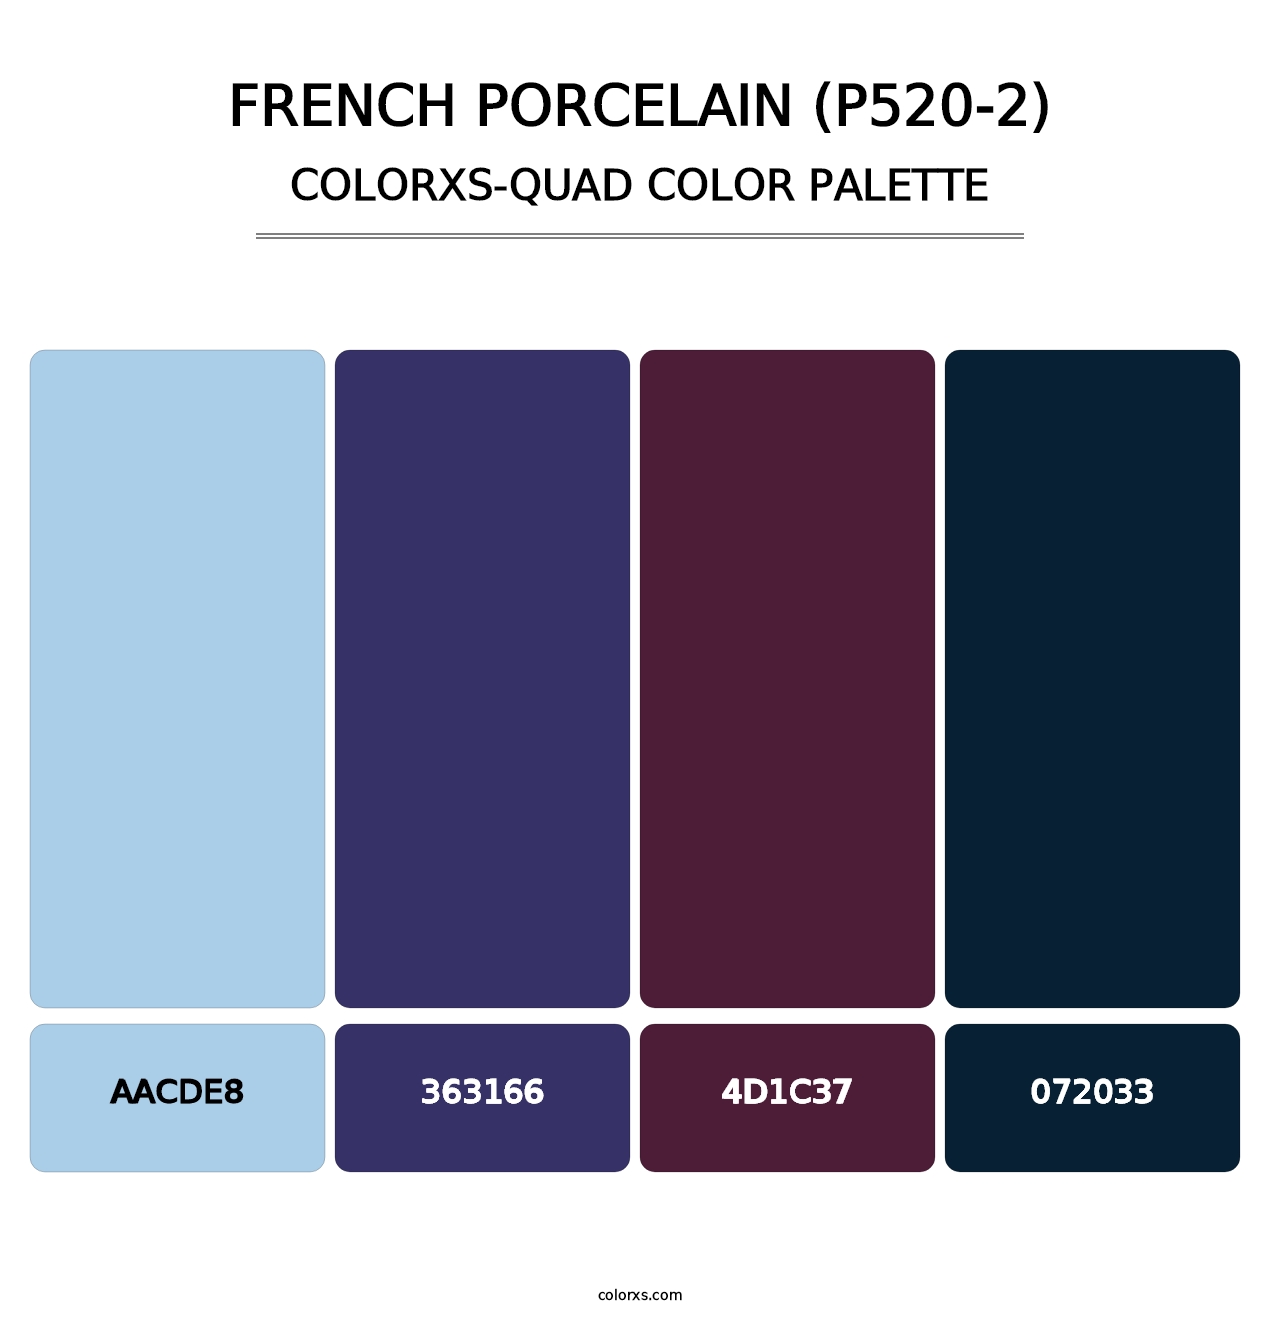 French Porcelain (P520-2) - Colorxs Quad Palette